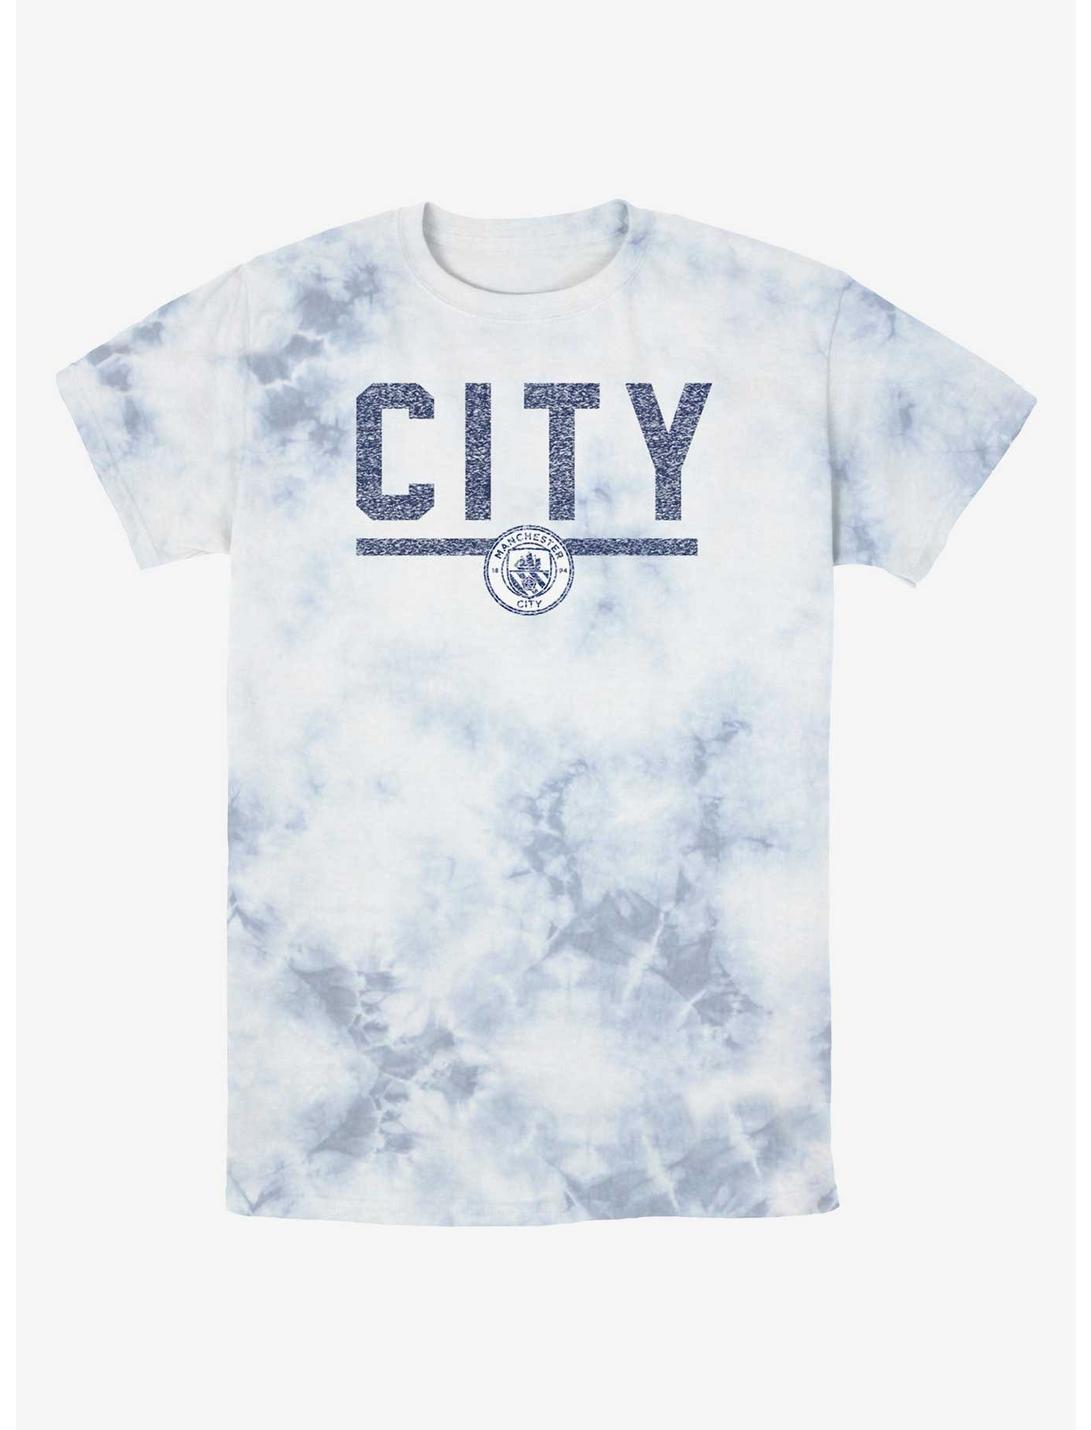 Premier League Manchester City F.C. Simple Tie-Dye T-Shirt, WHITEBLUE, hi-res